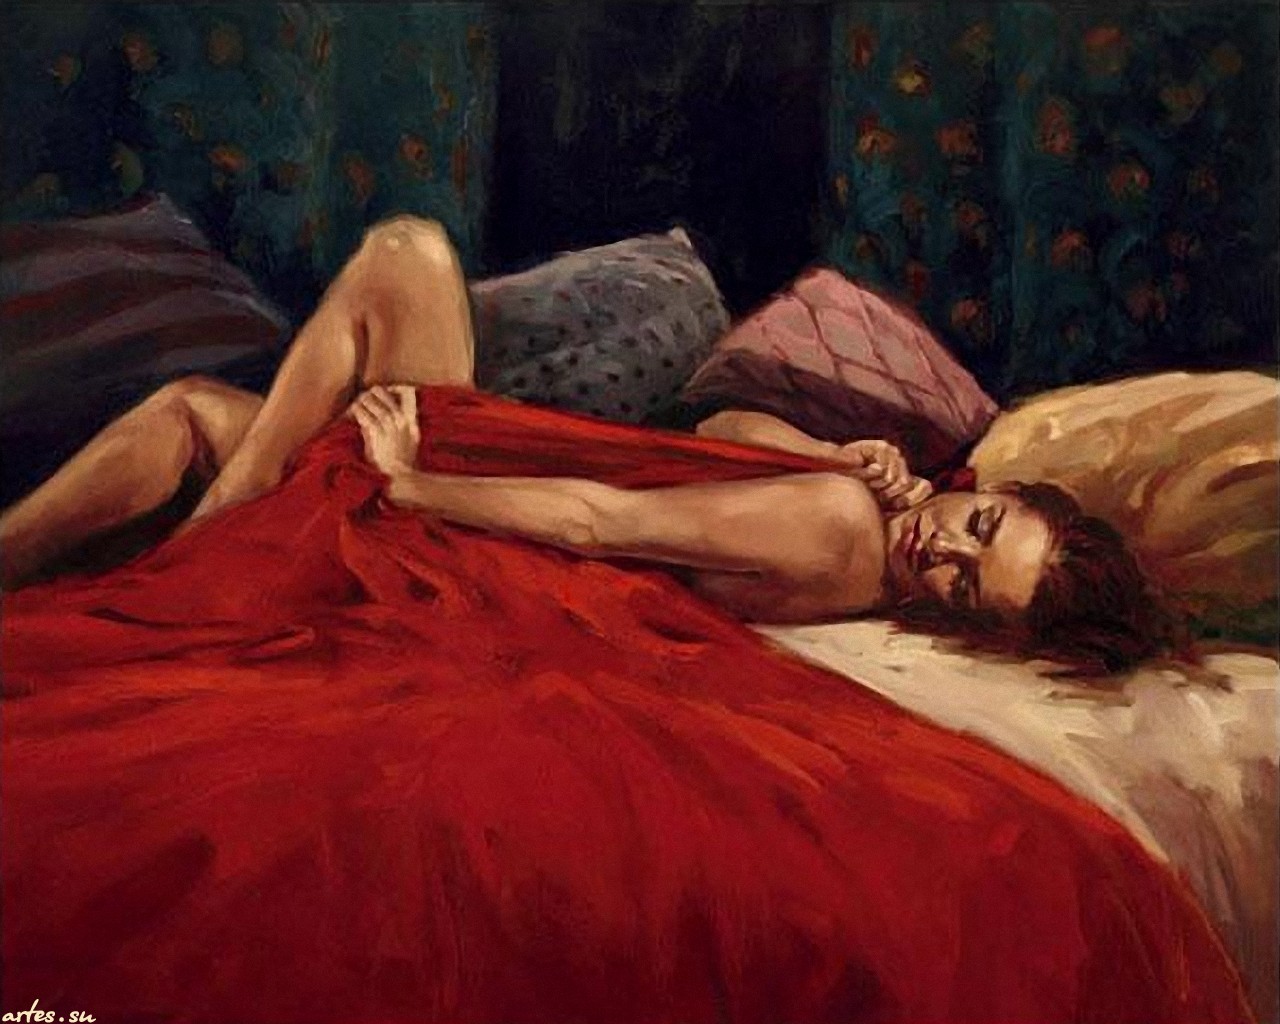 Картины лежа. Марк Спейн художник картины. Художник Марк Спейн (Mark Spain) одинокие женщины. Марк Спейн картины мужчина и женщина. Женщина лежит.